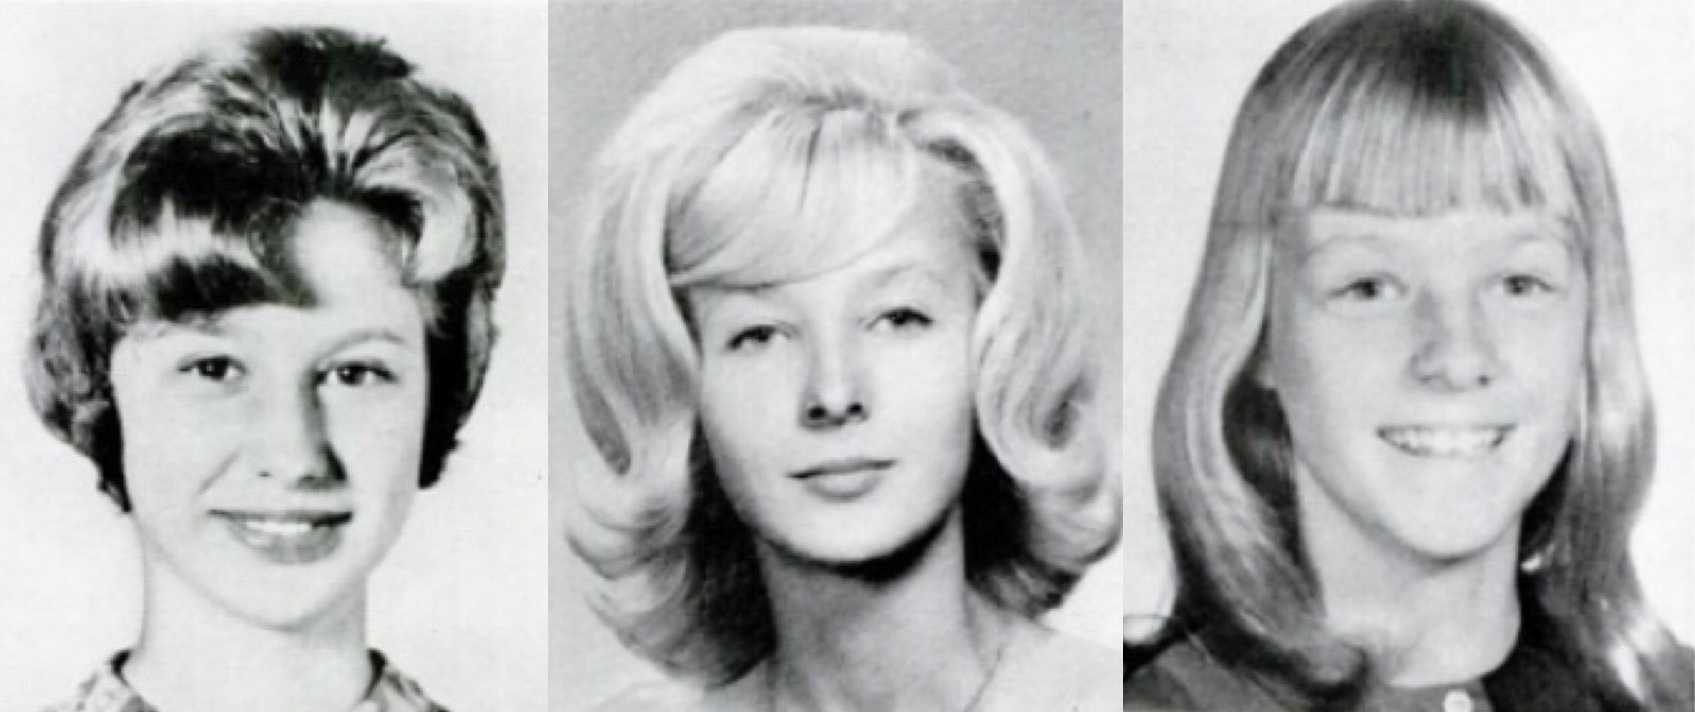 Từ trái qua phải: Alleen Rowe, Gretchen Fritz và em gái của Gretchen Fritz